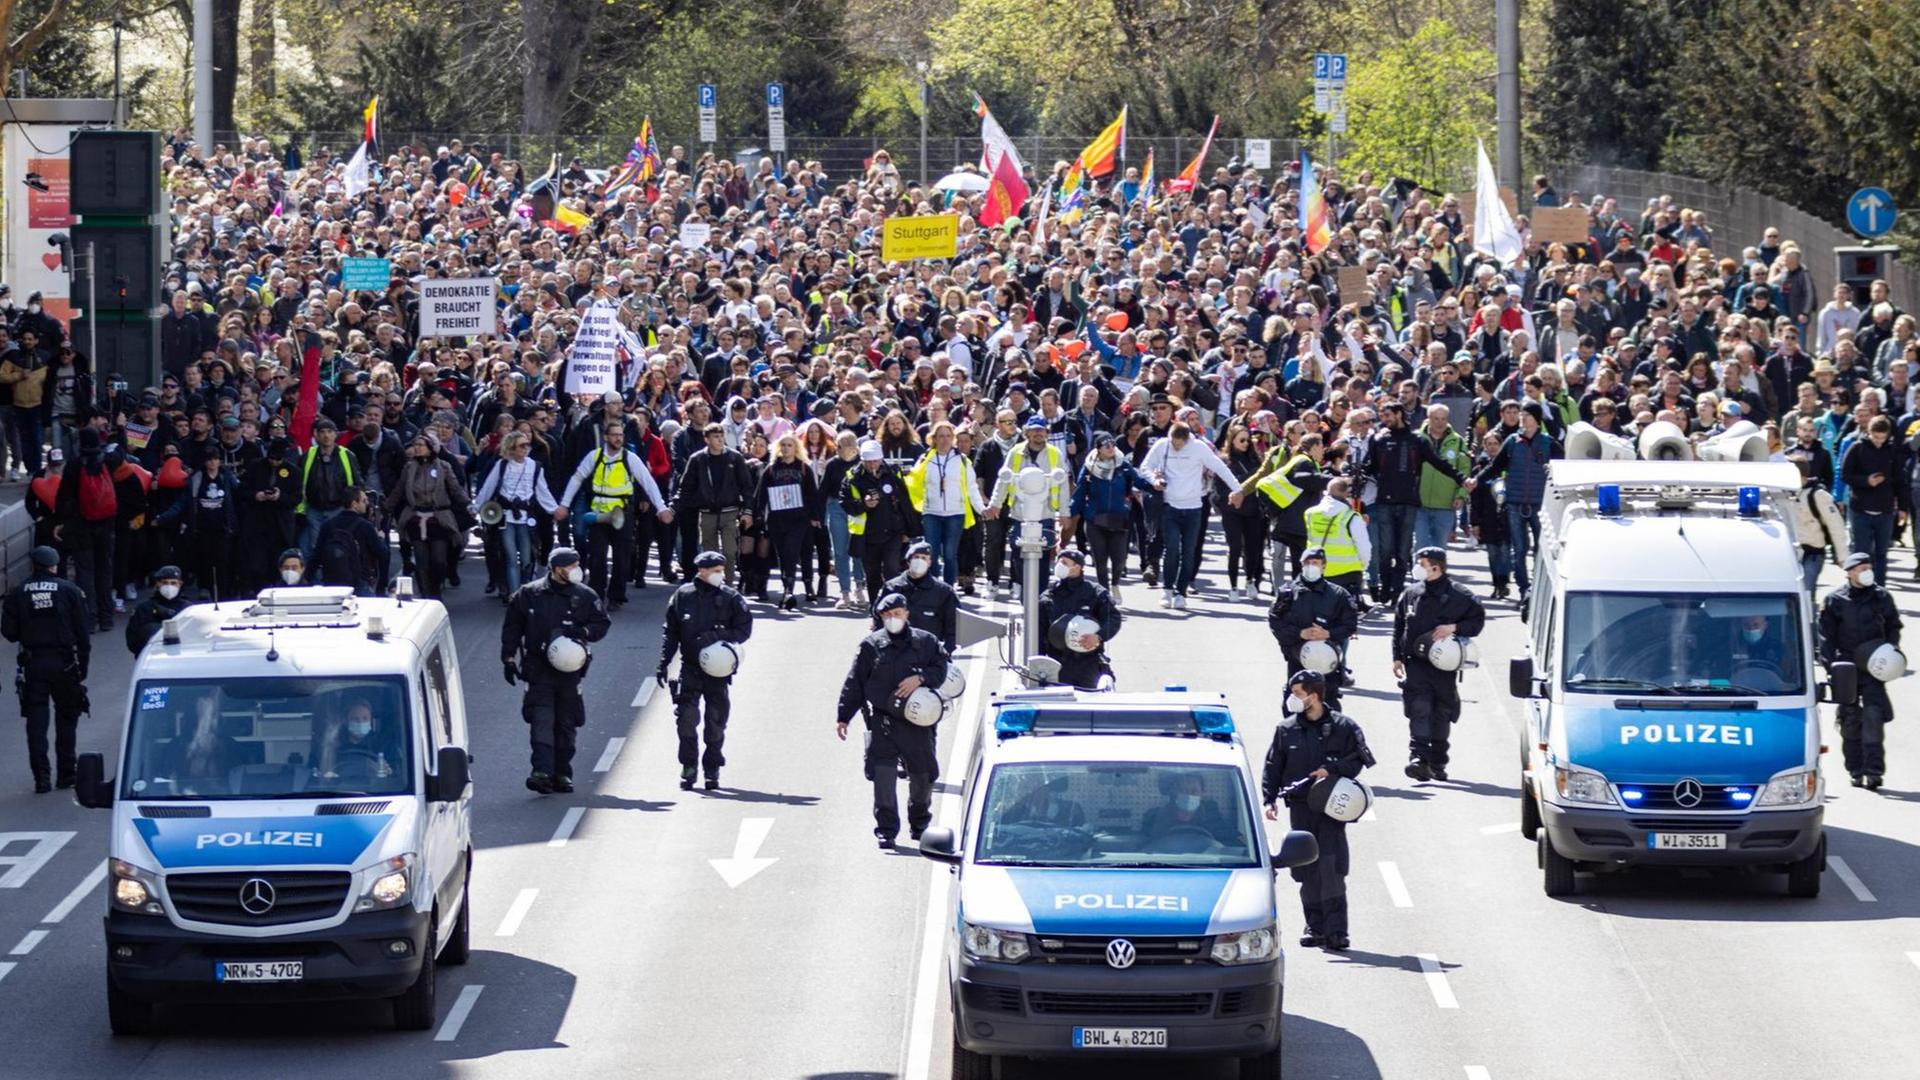 Demonstration von "Querdenken 711" in Stuttgart am Karsamstag. Vor der Demo sind Polizeifahrzeuge zu sehen.